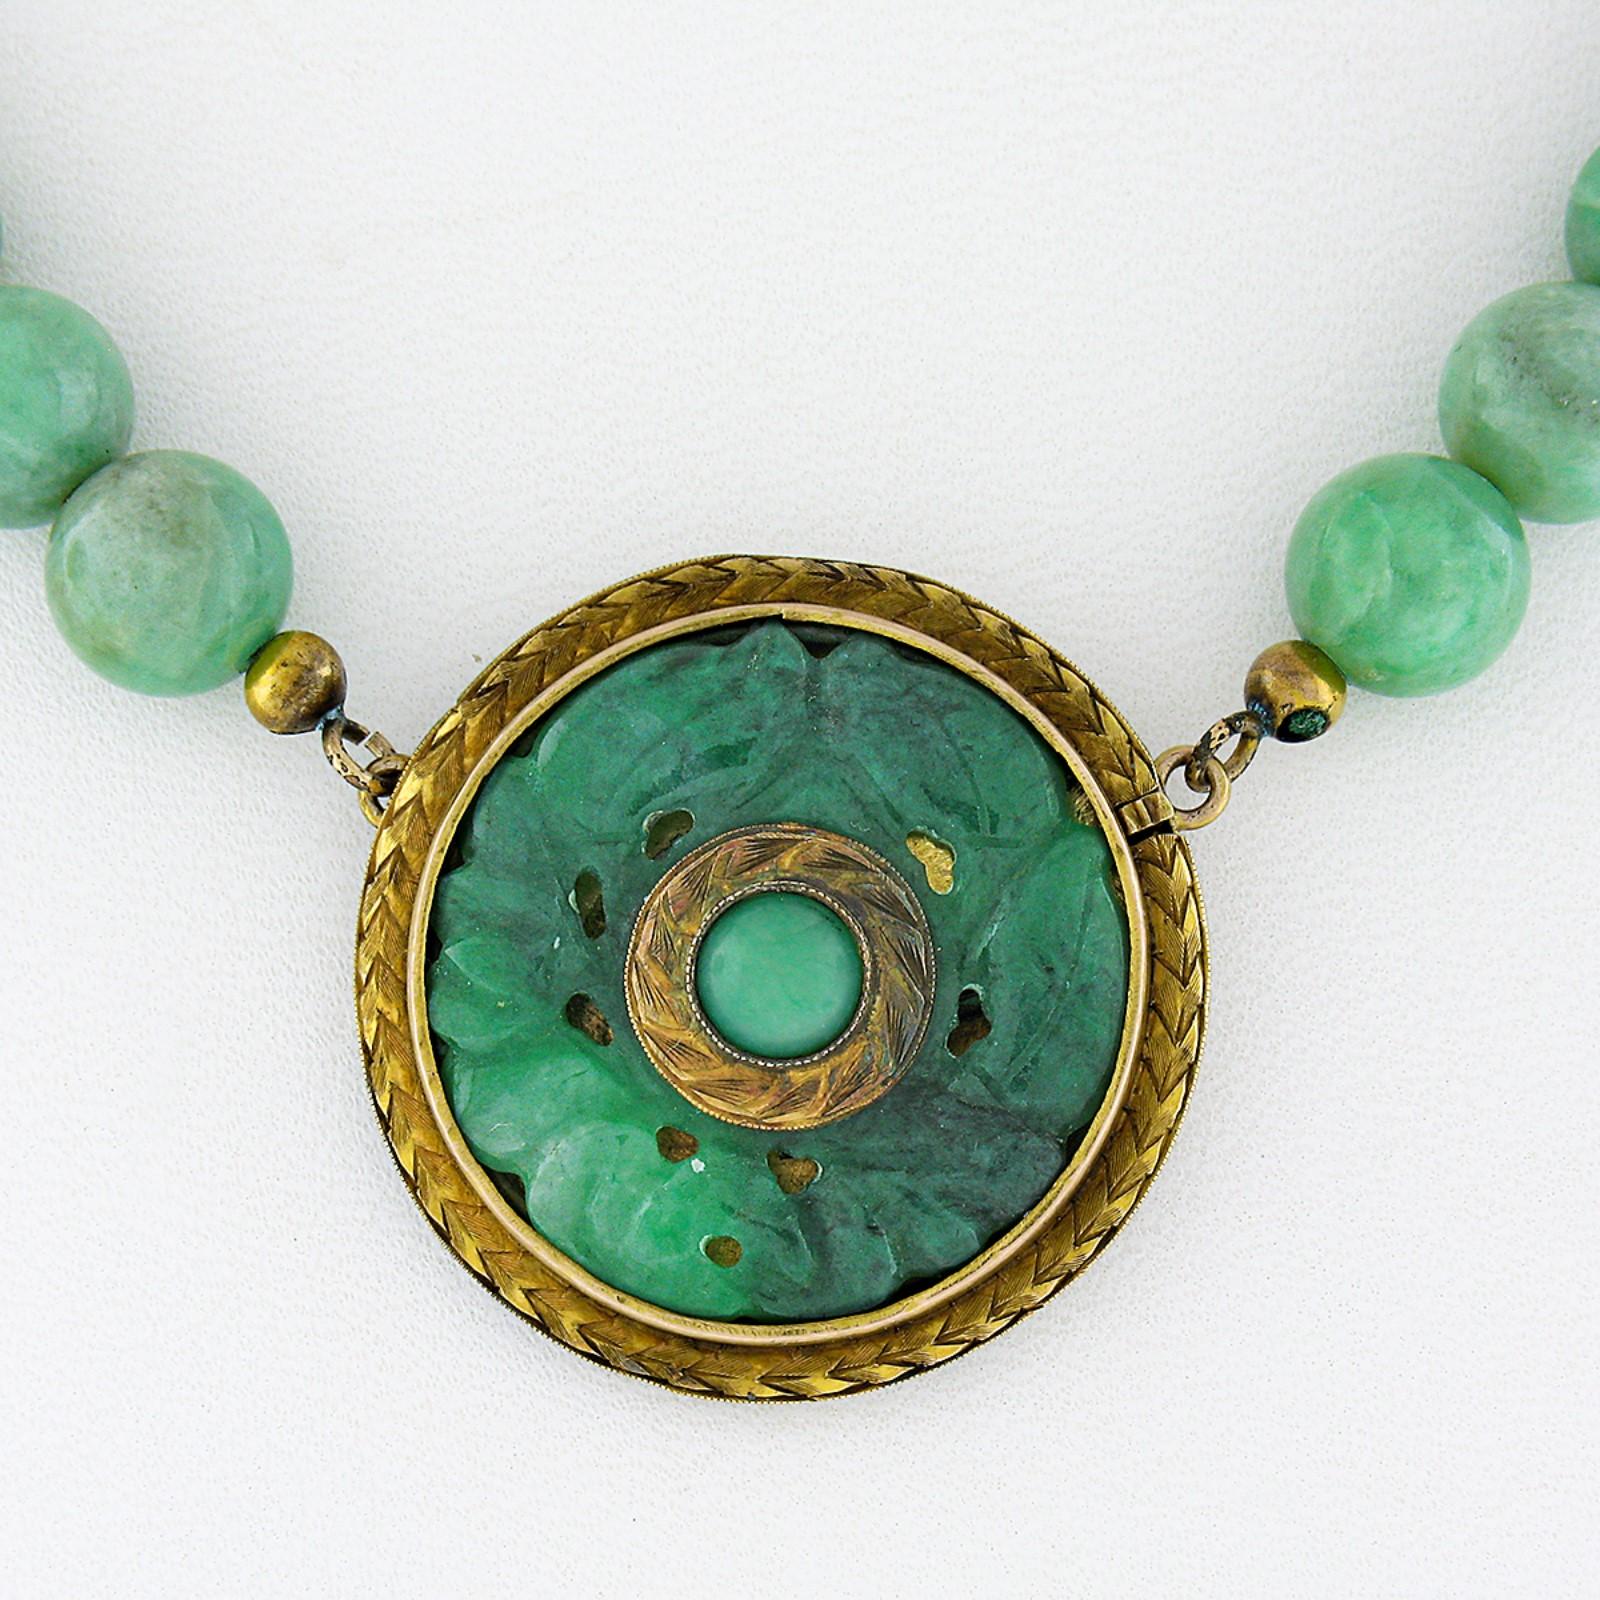 Hier haben wir eine absolut prächtige antike grüne Jade Perlenstrang Halskette, die eine unglaubliche geschnitzte Jade Anhänger in massivem 14k Gelbgold gesetzt Funktionen. Die Jade auf diesem Anhänger wurde meisterhaft in ein hübsches Blumendesign